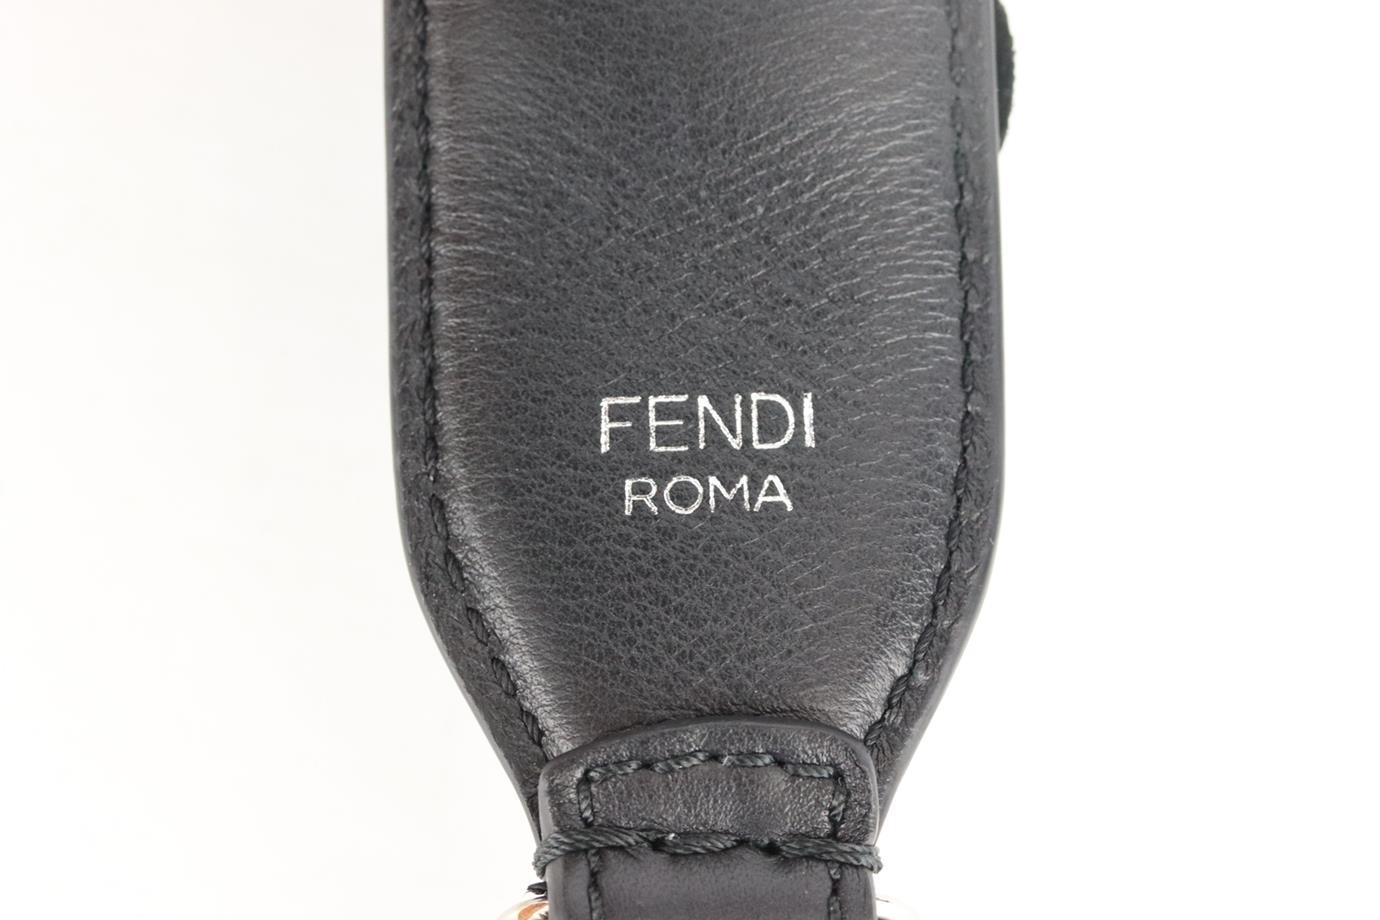 Women's Fendi Floral Appliquéd Leather Bag Strap For Sale